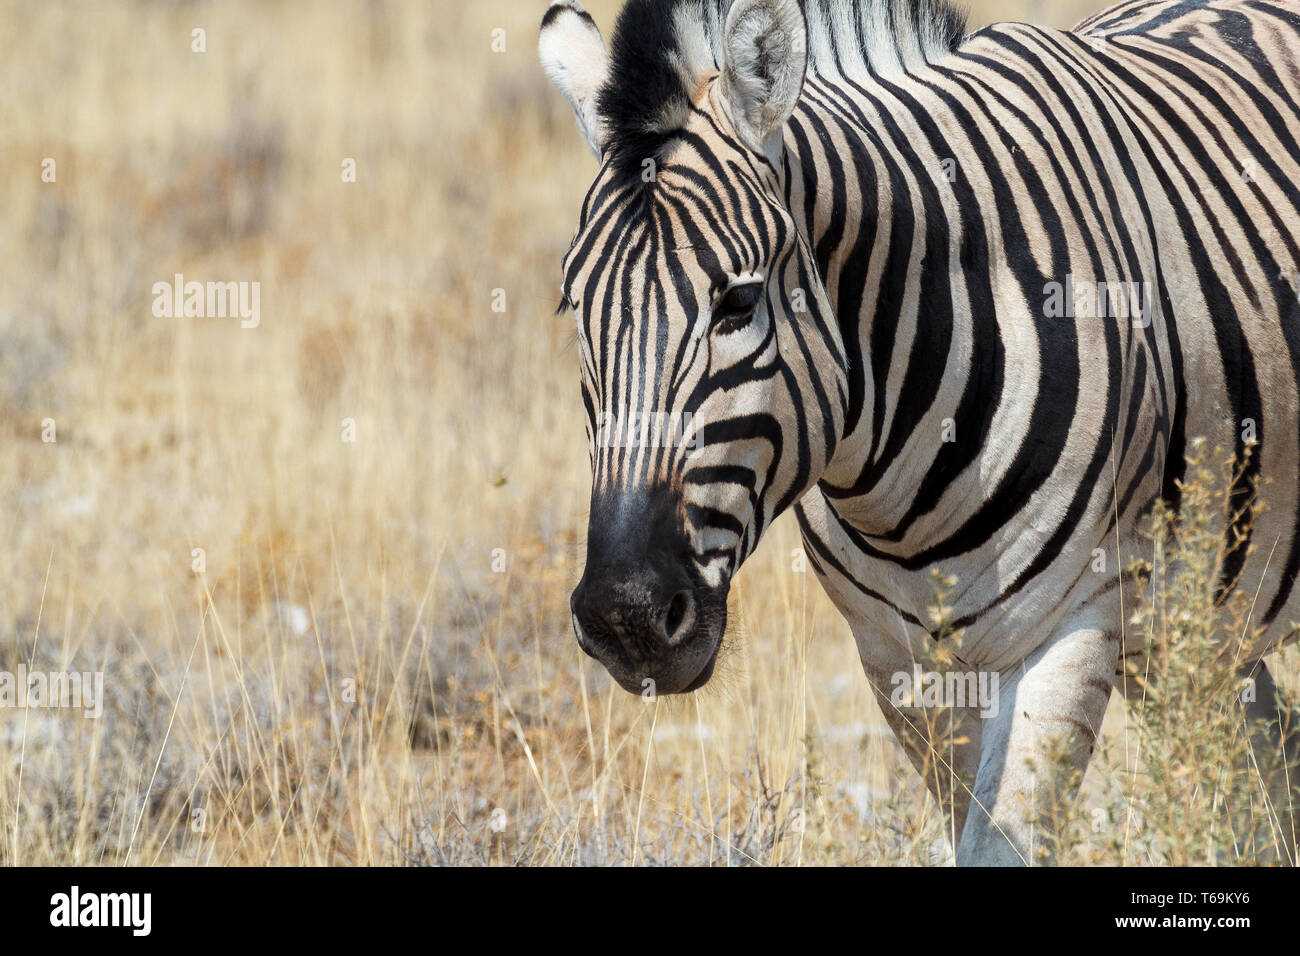 Zebra in african bush Stock Photo